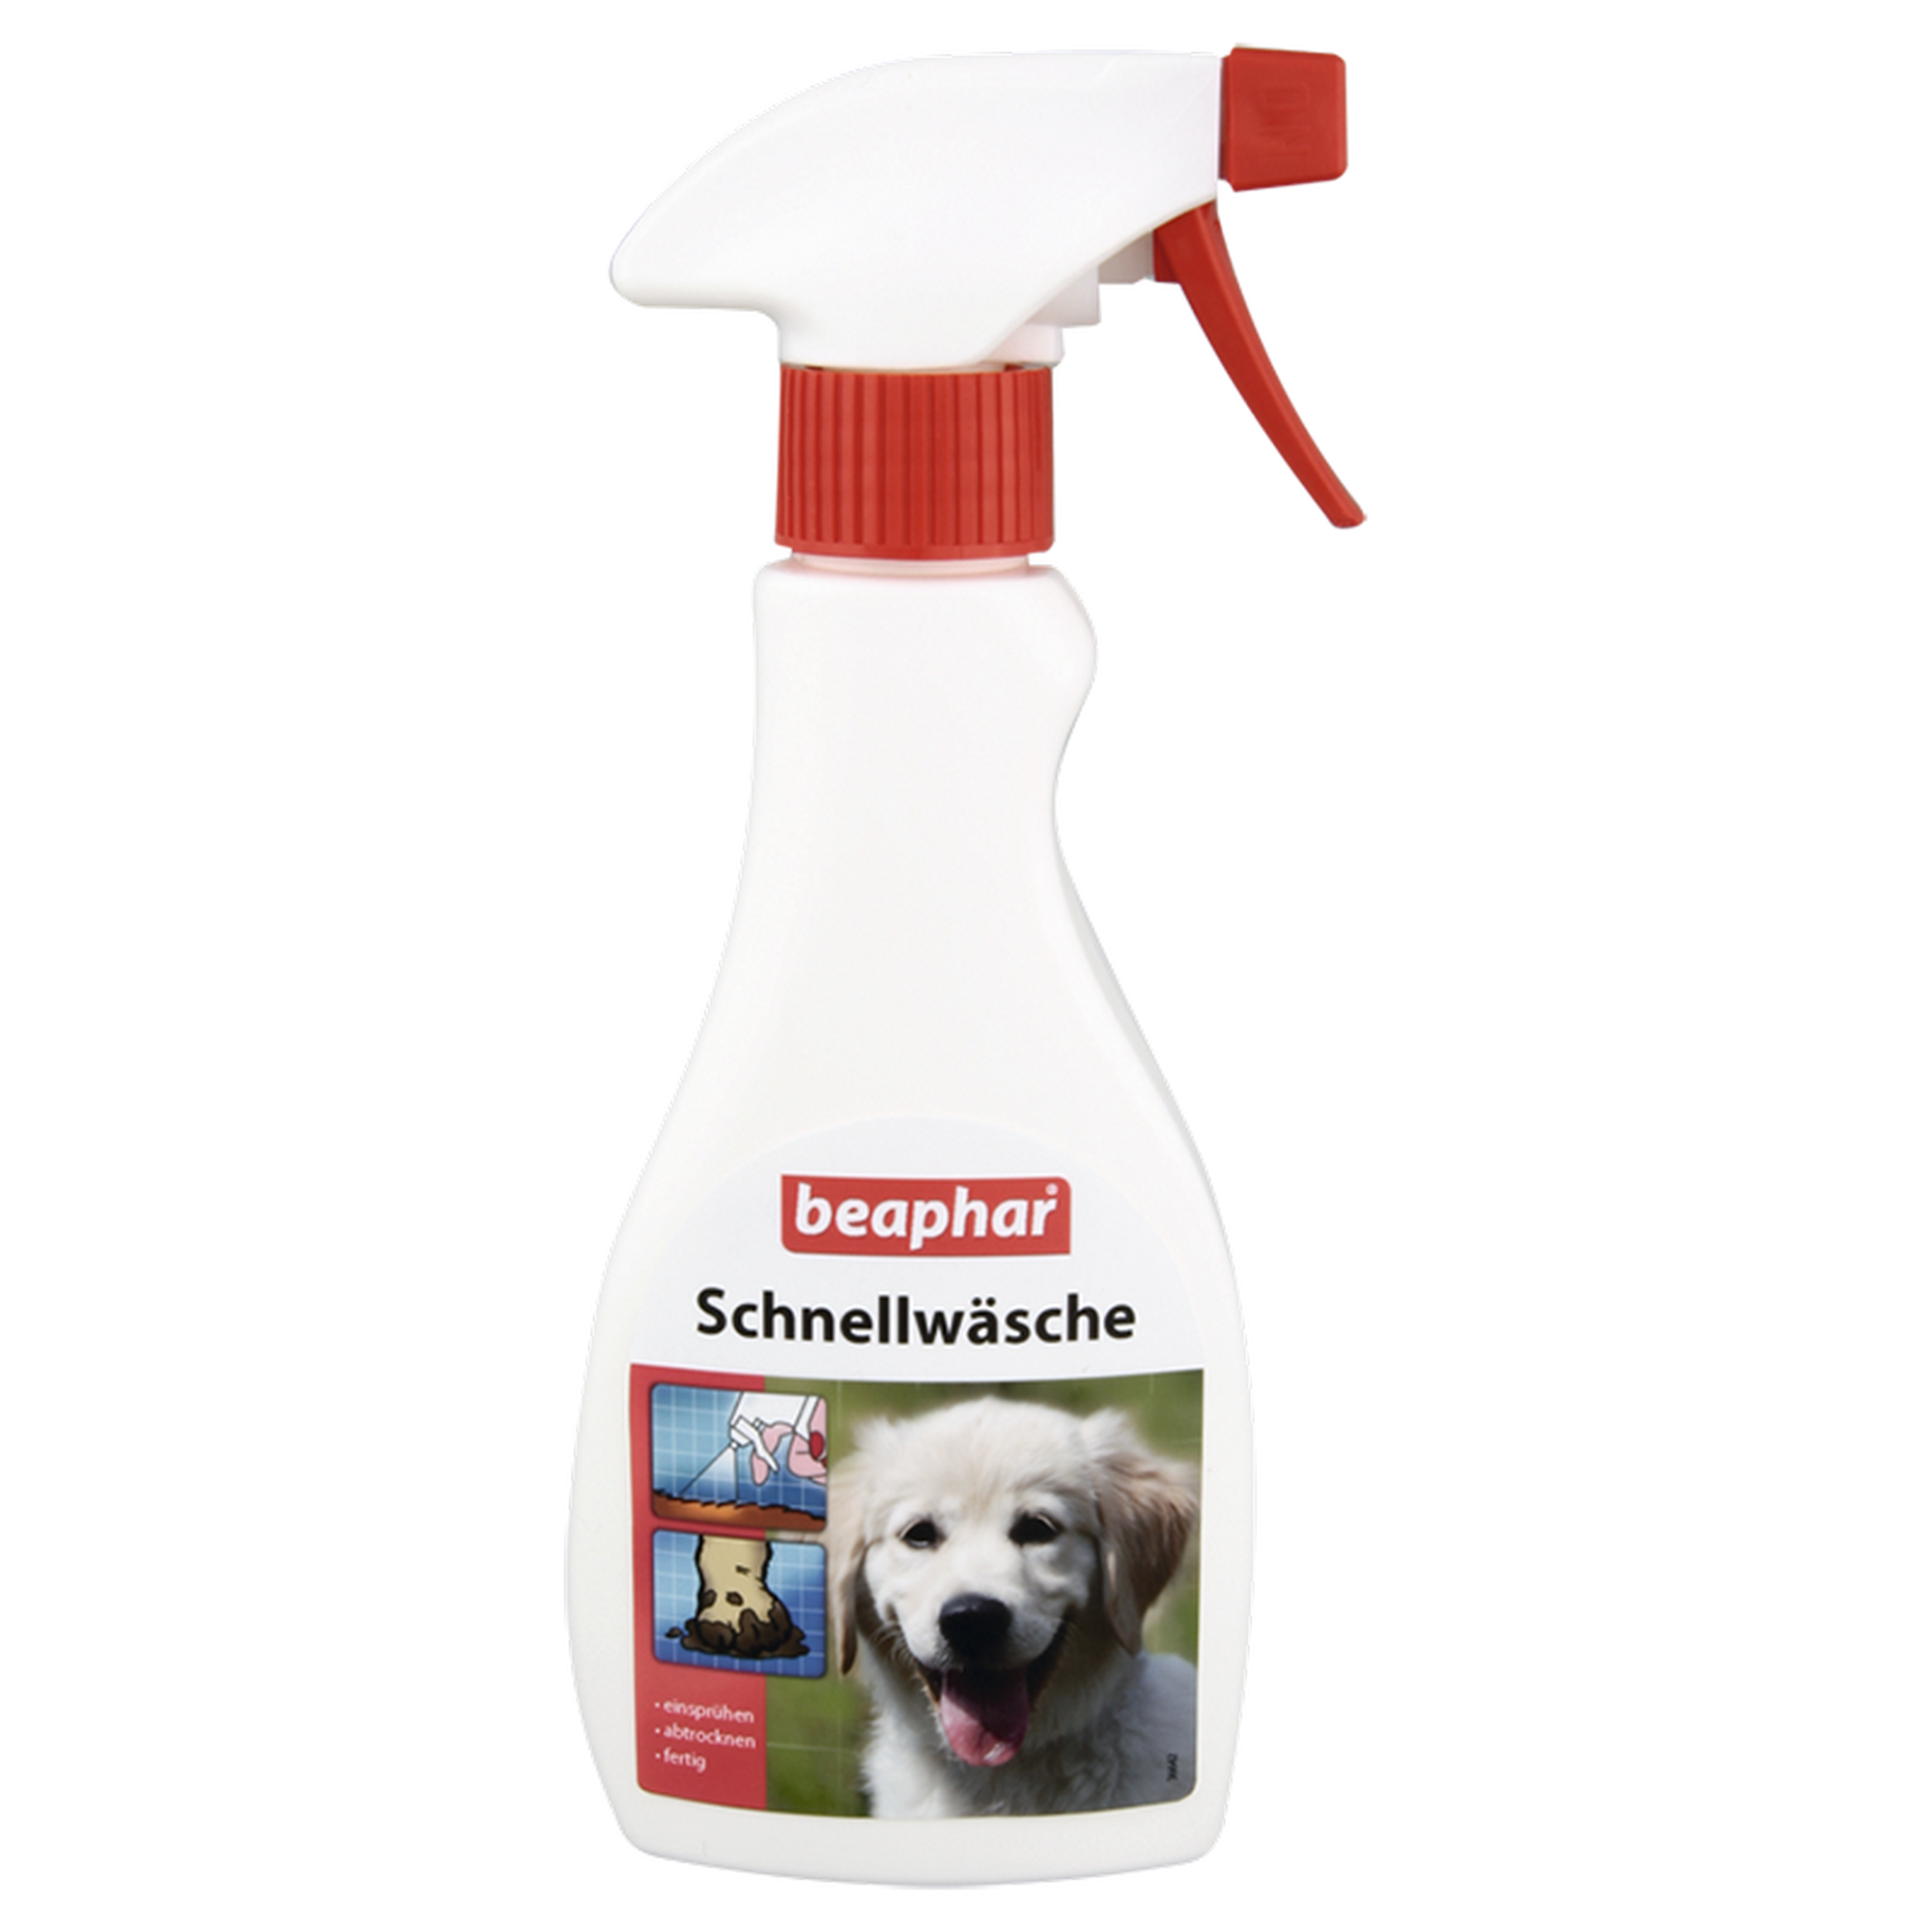 Schnellwäsche für Hunde 250 ml + product picture